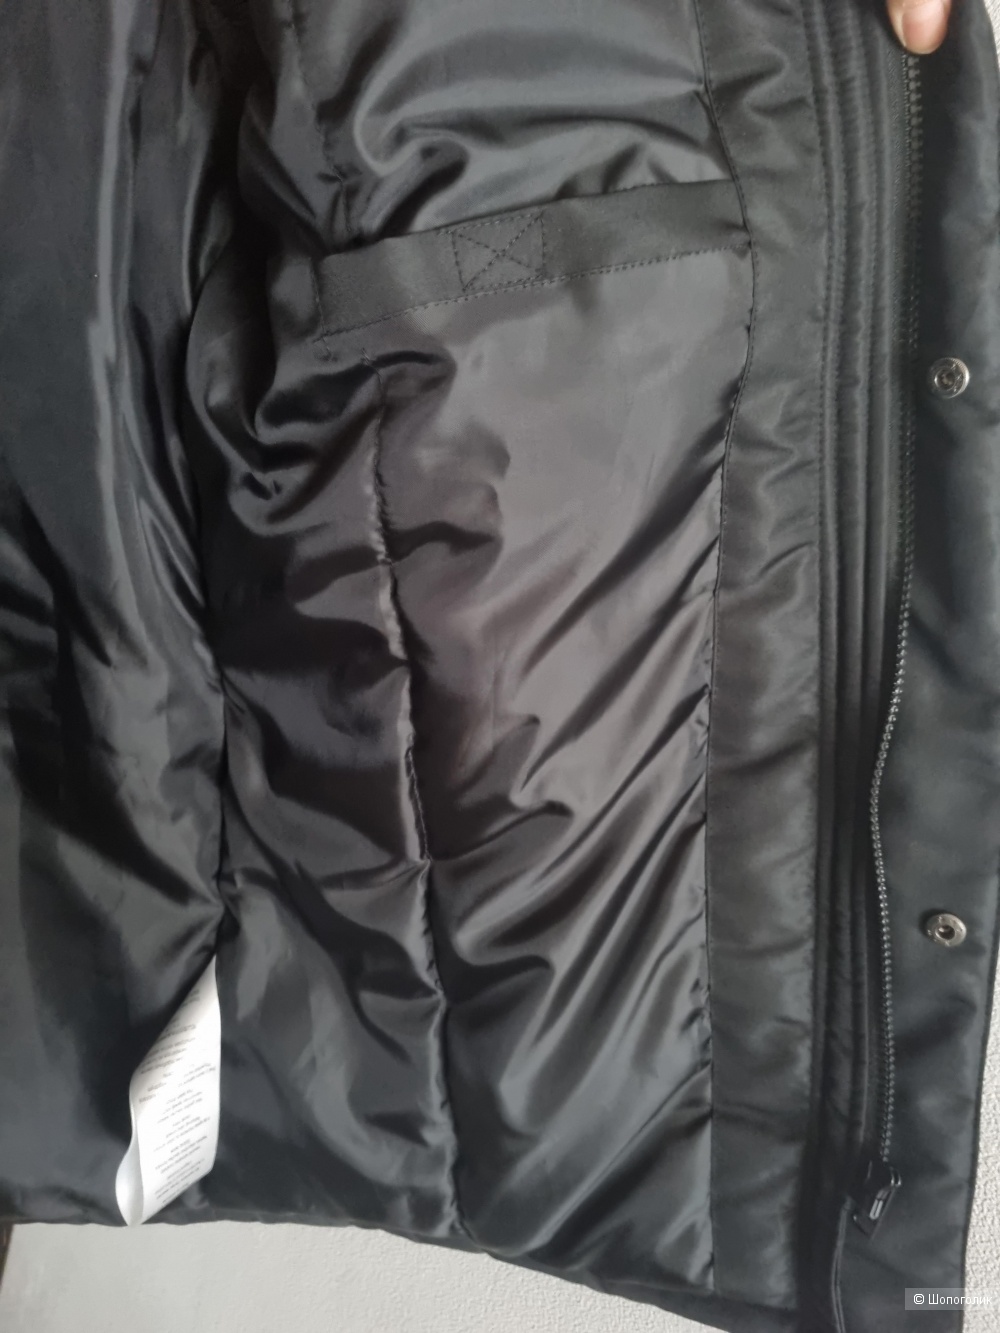 Куртка Threadbare, 52 р